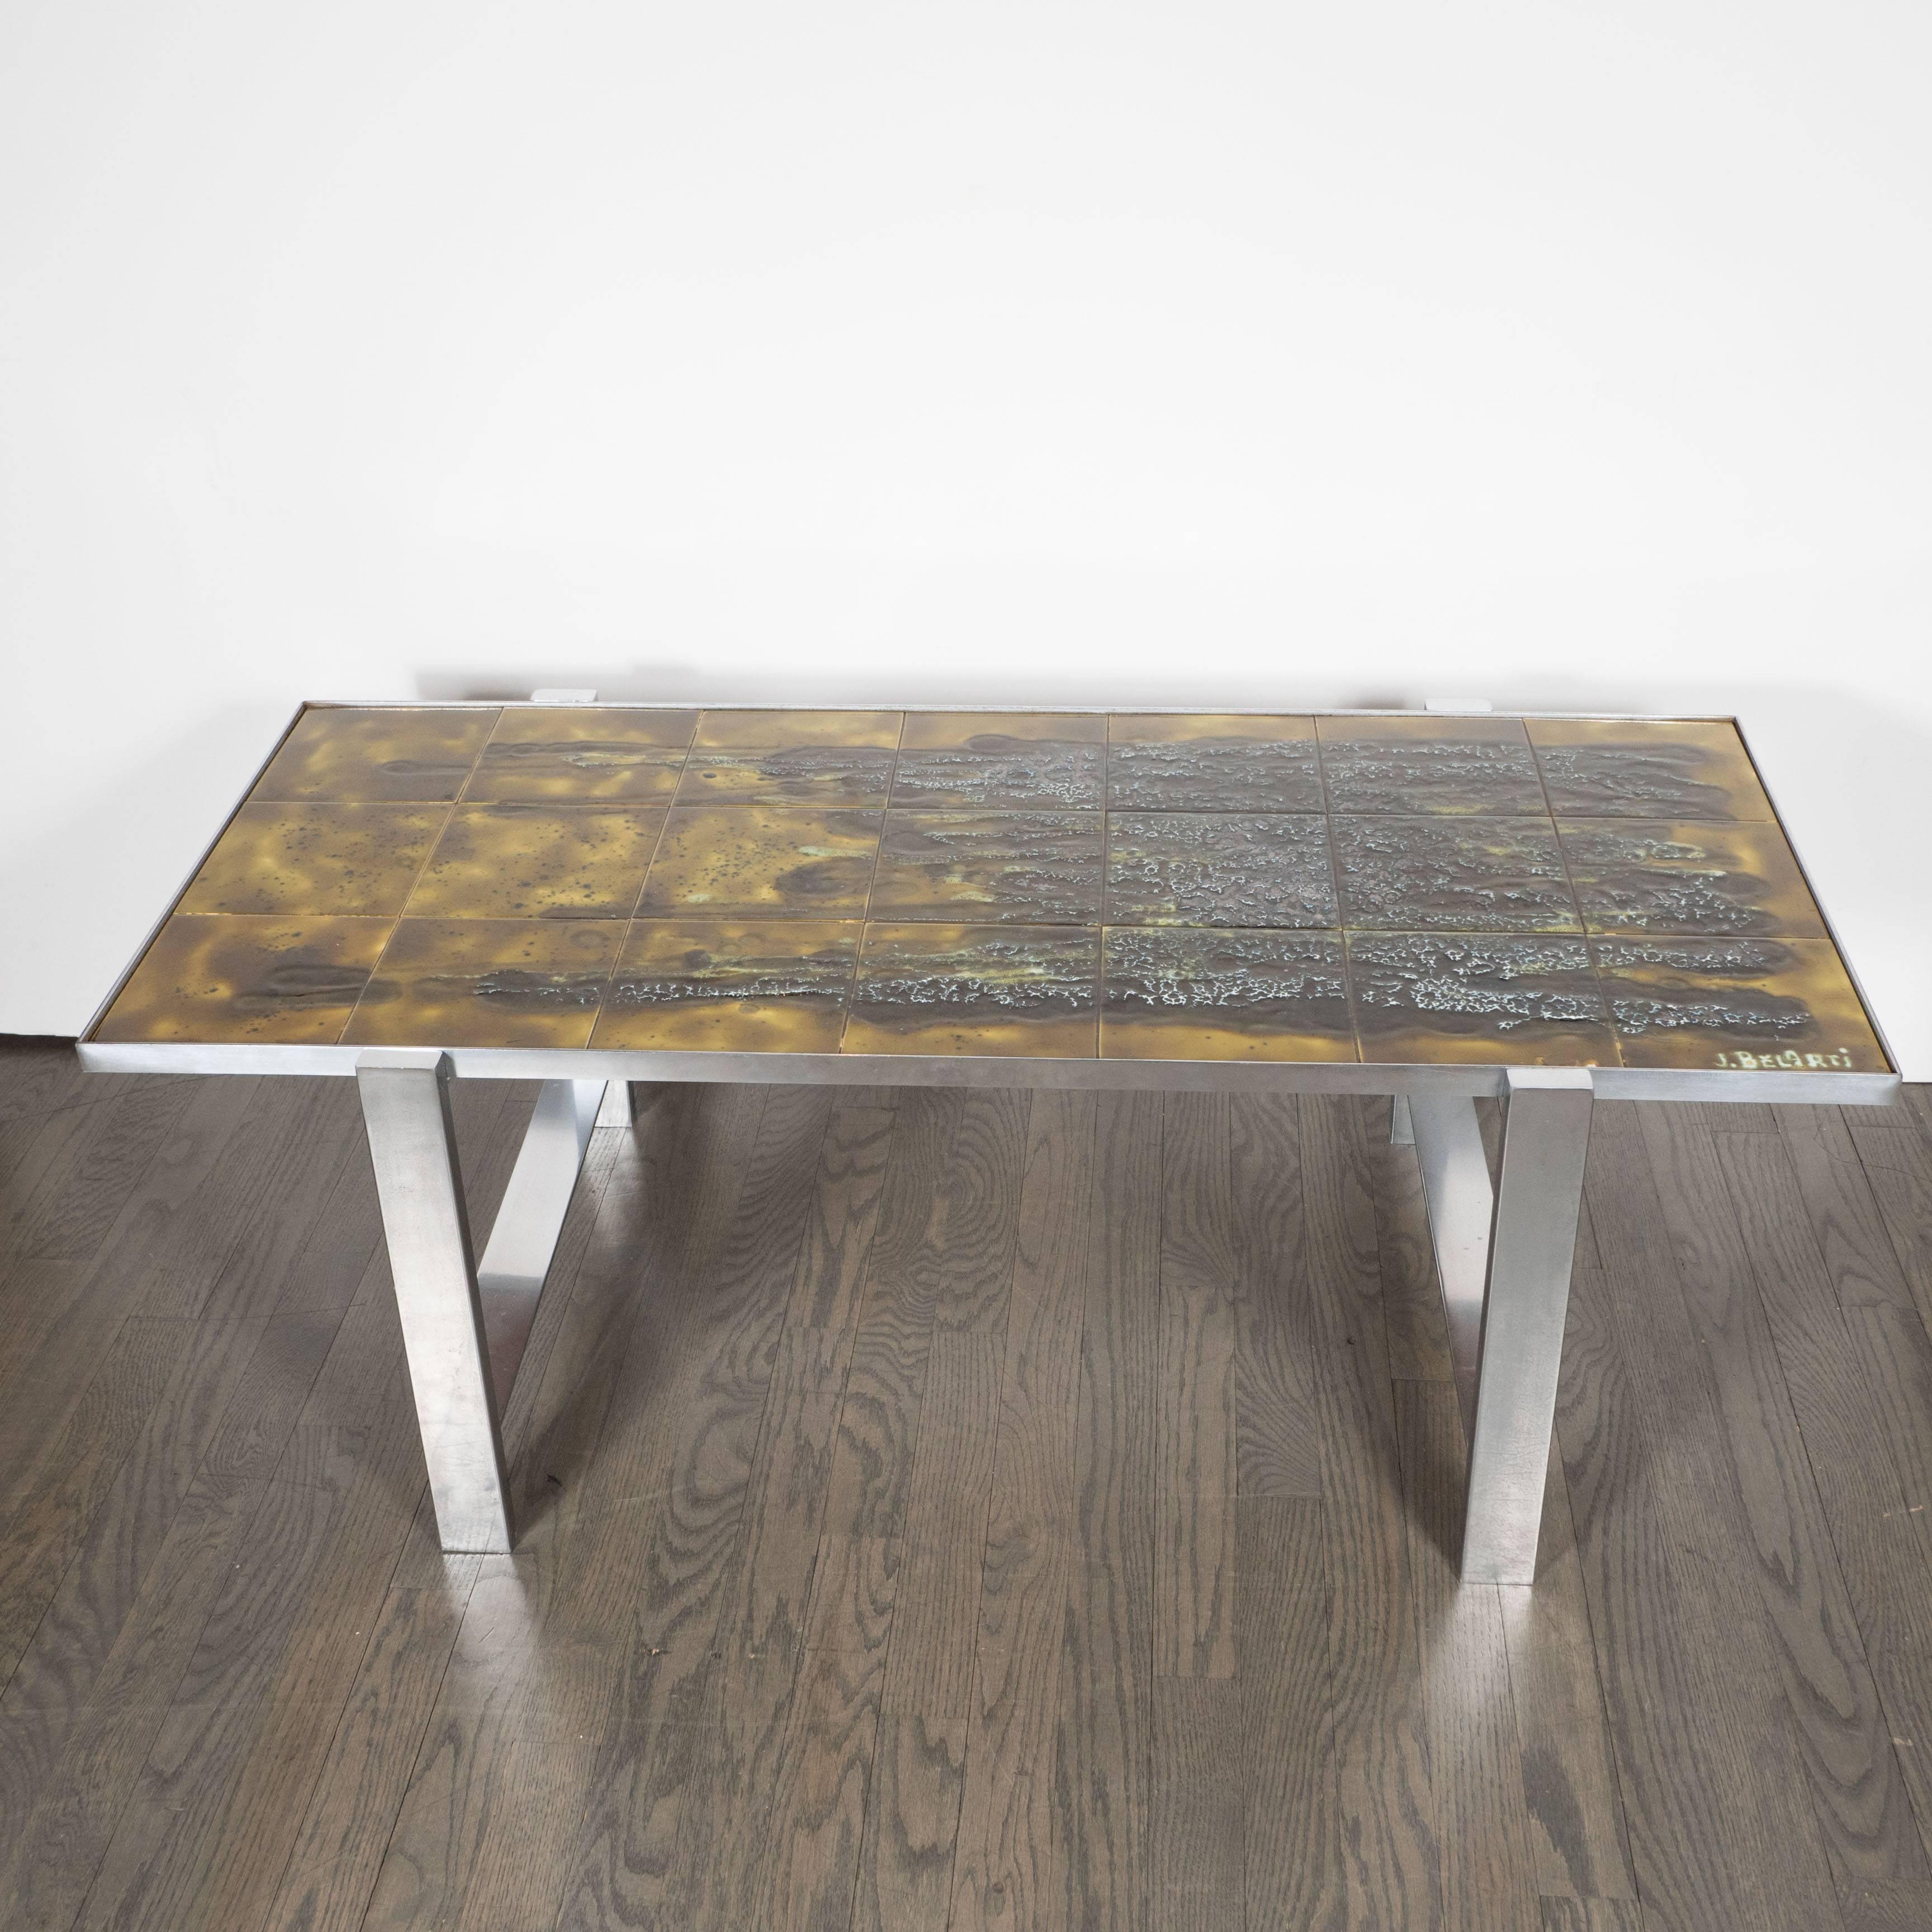 Superbe table basse en aluminium poli et carreaux de céramique de Juliette Belarti, de style moderne du milieu du siècle. Le plateau est composé de carreaux de céramique artisanale vert mousse et brun noir, signés 